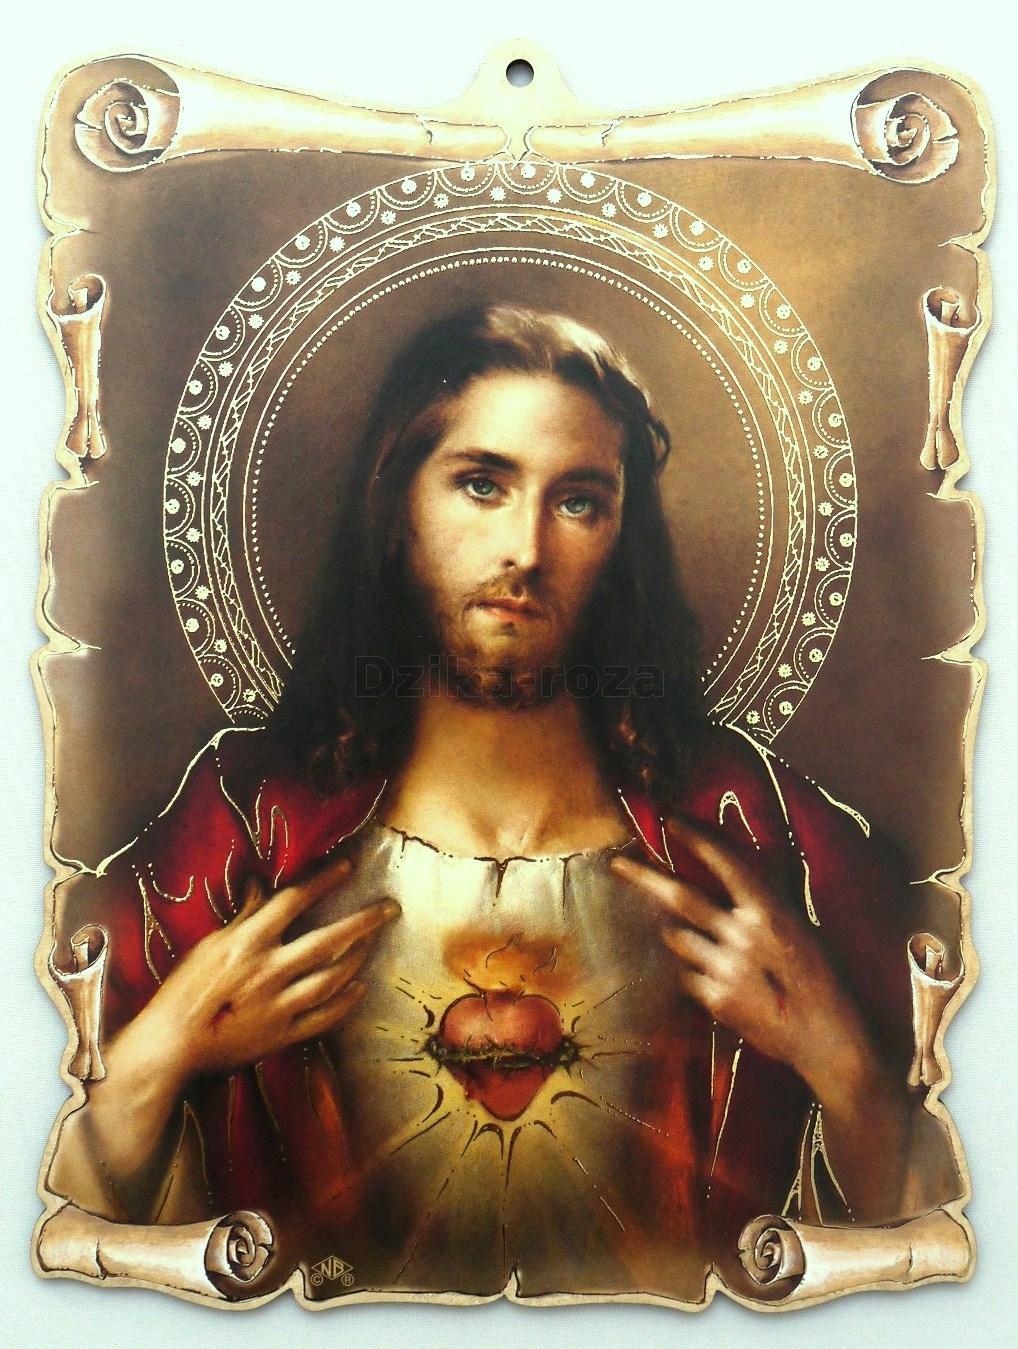 Znalezione obrazy dla zapytania serce jezusa obraz